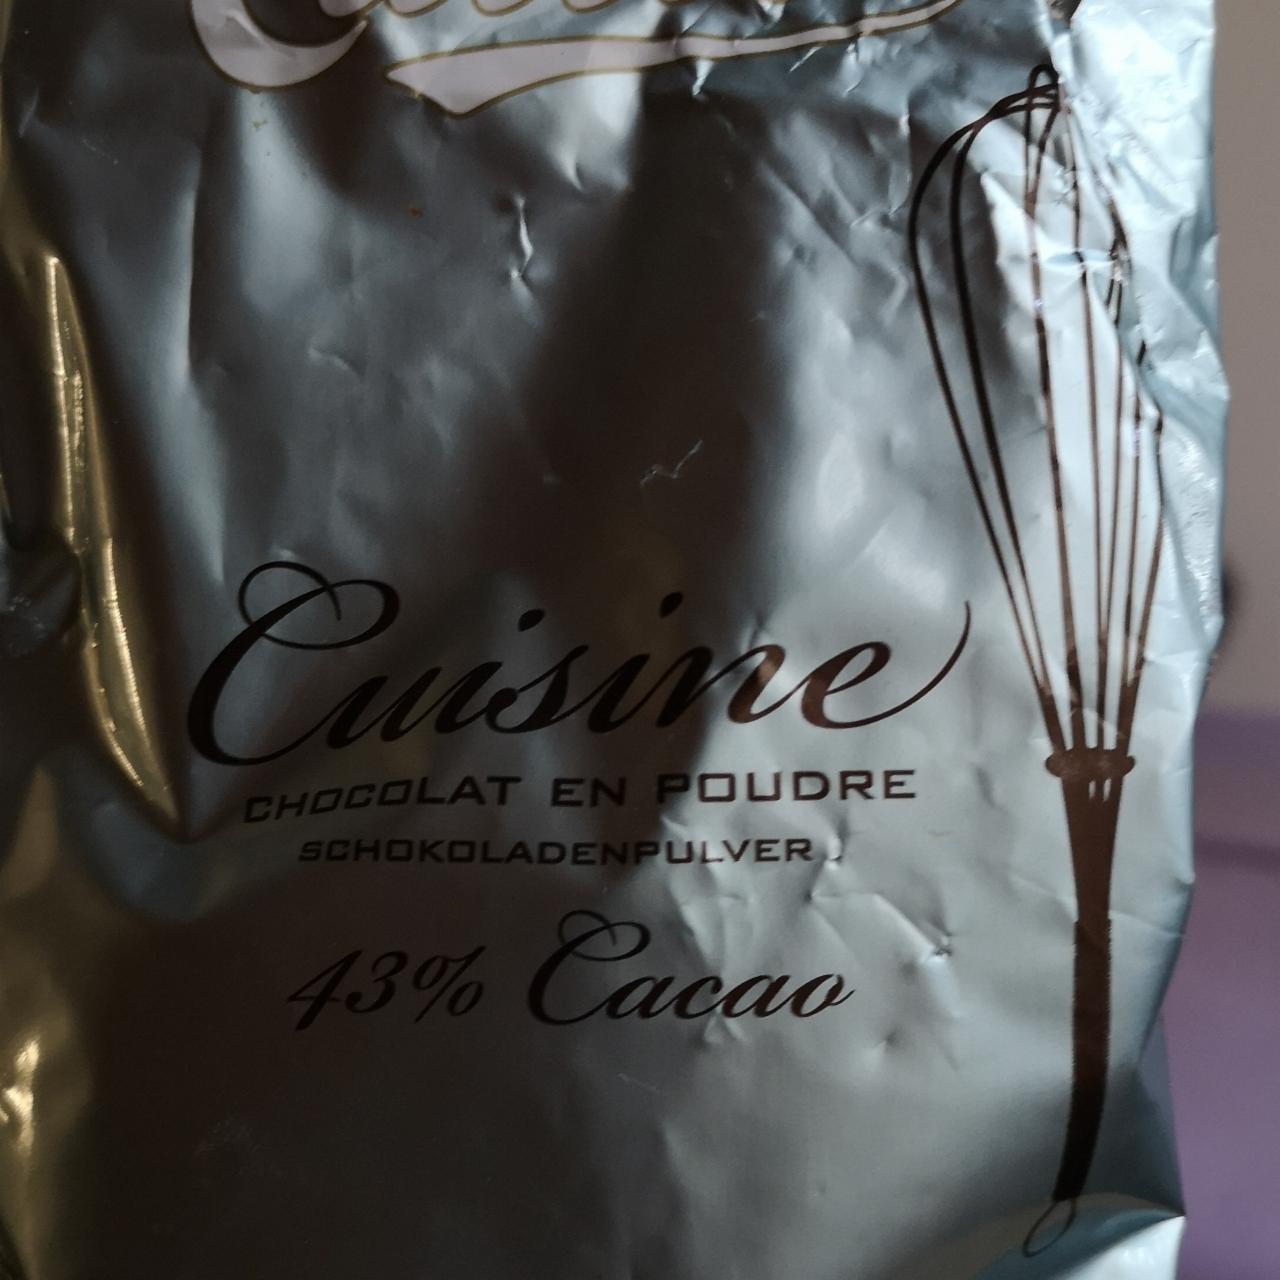 Fotografie - Cuisine Chocolat en Poudre 43% Cacao Cailler